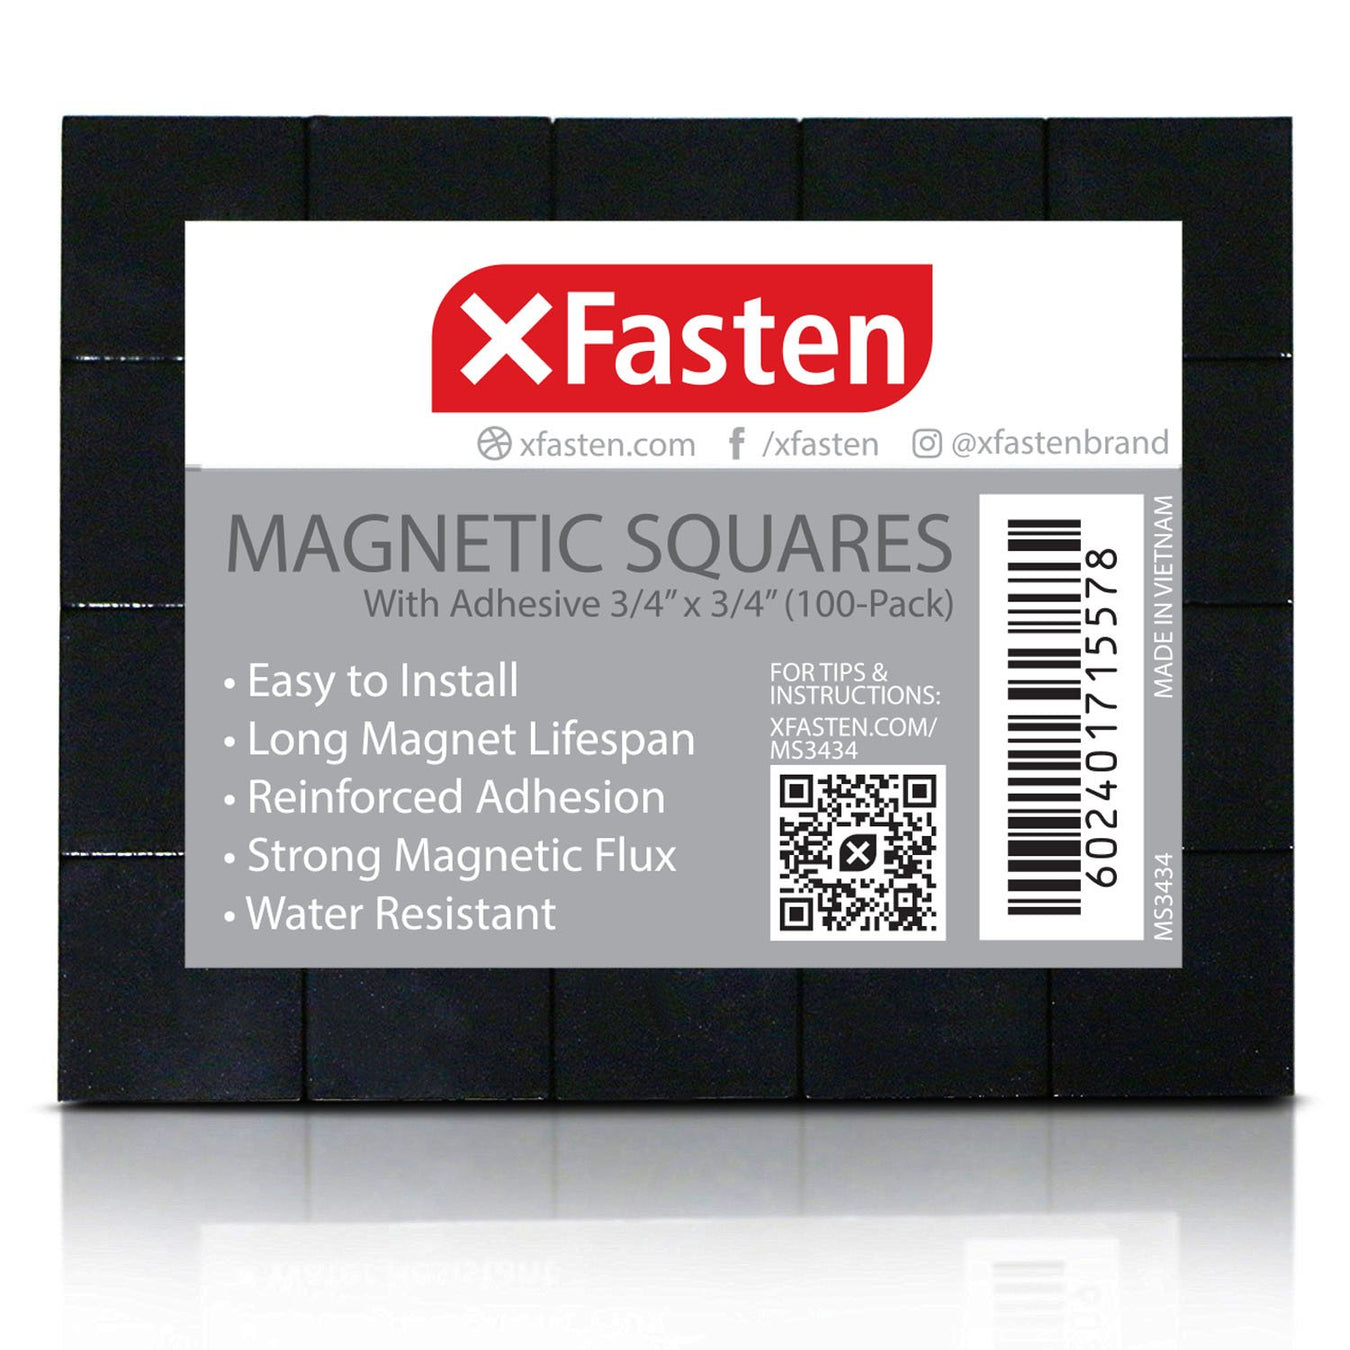 Magnetic Squares - XFasten